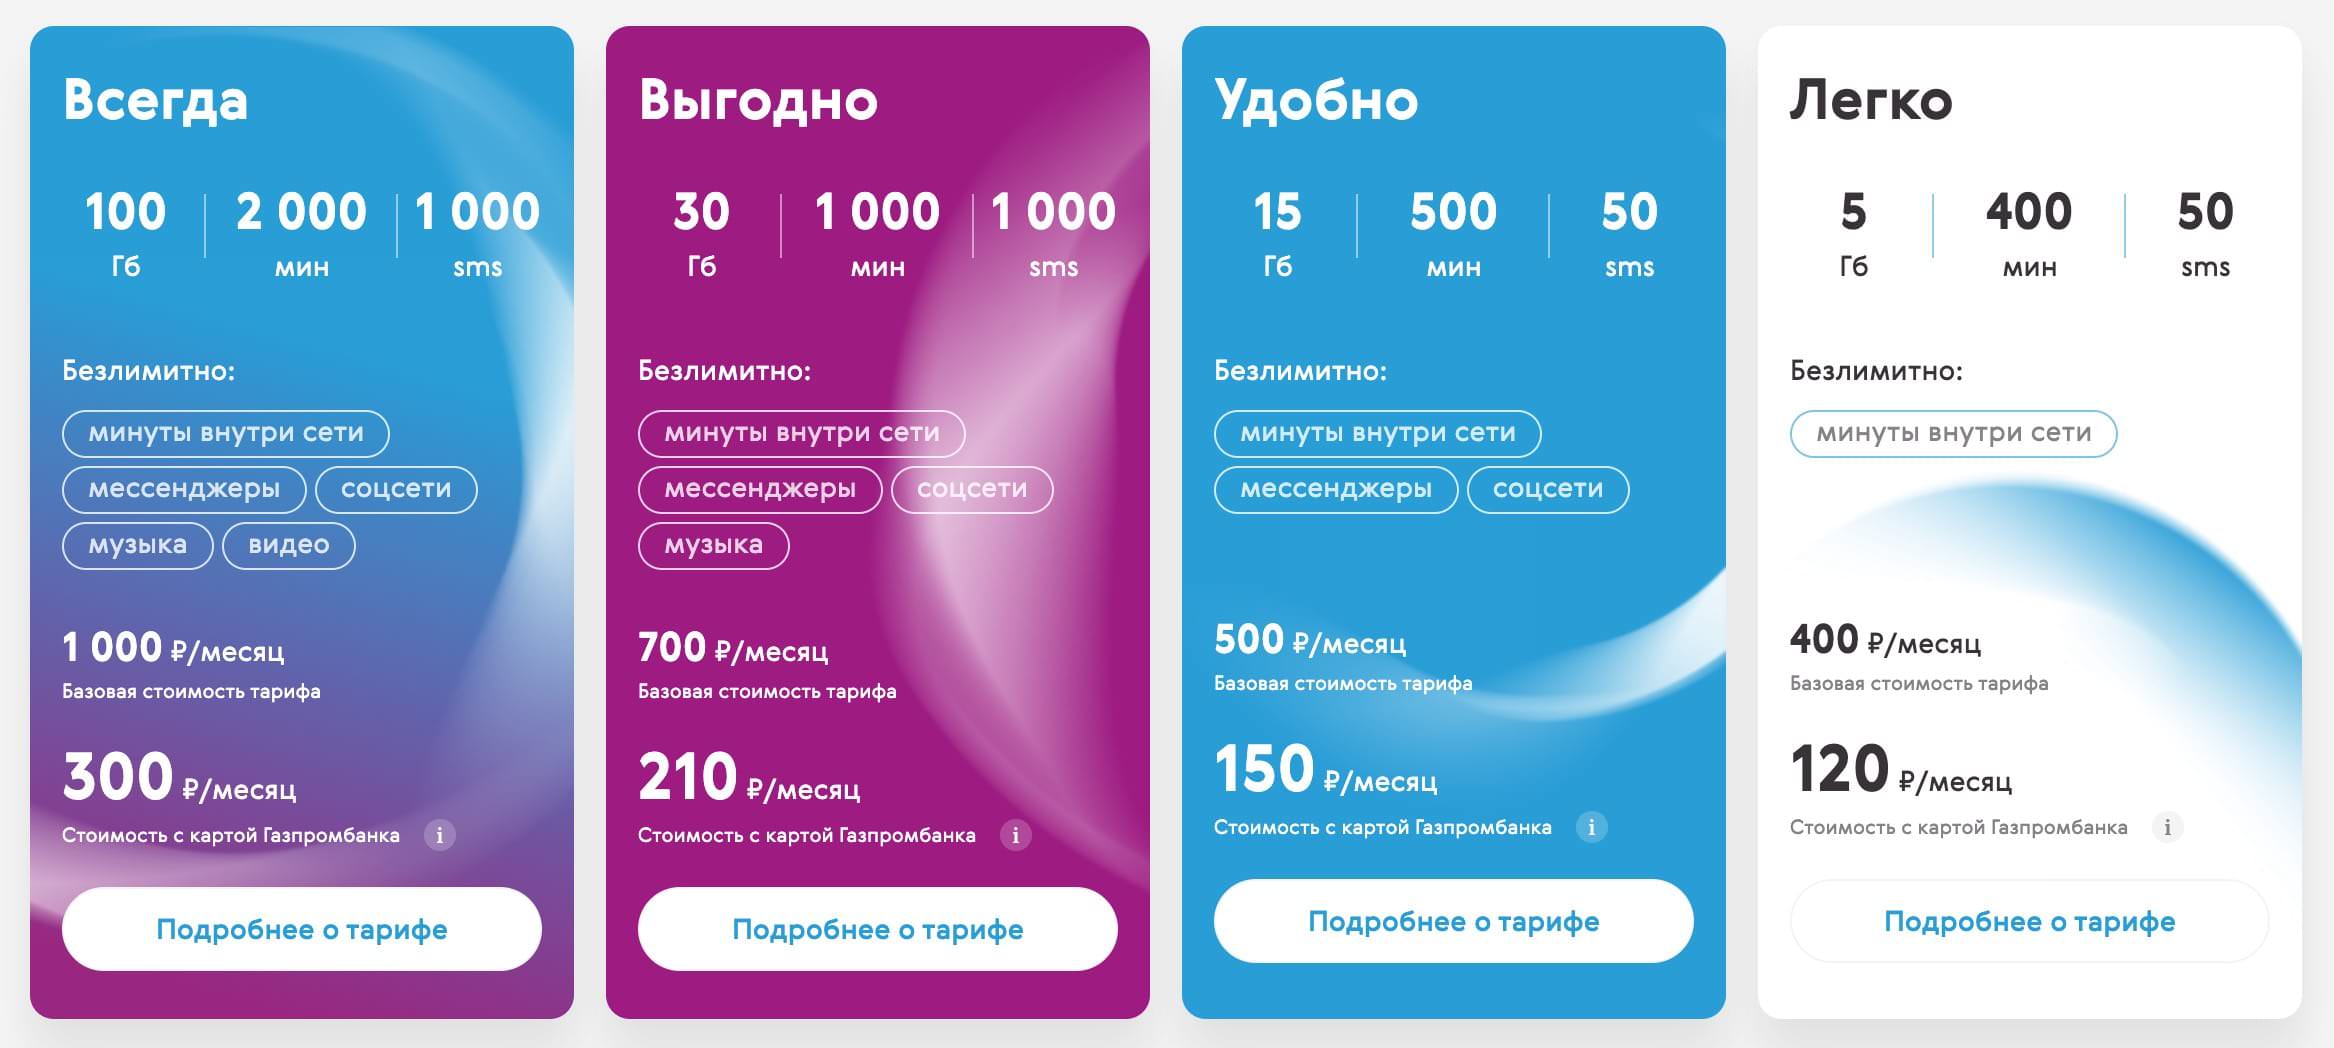 Новый сотовый оператор запустил лучшие тарифный планы за 120, 150 и 210 рублей в месяц